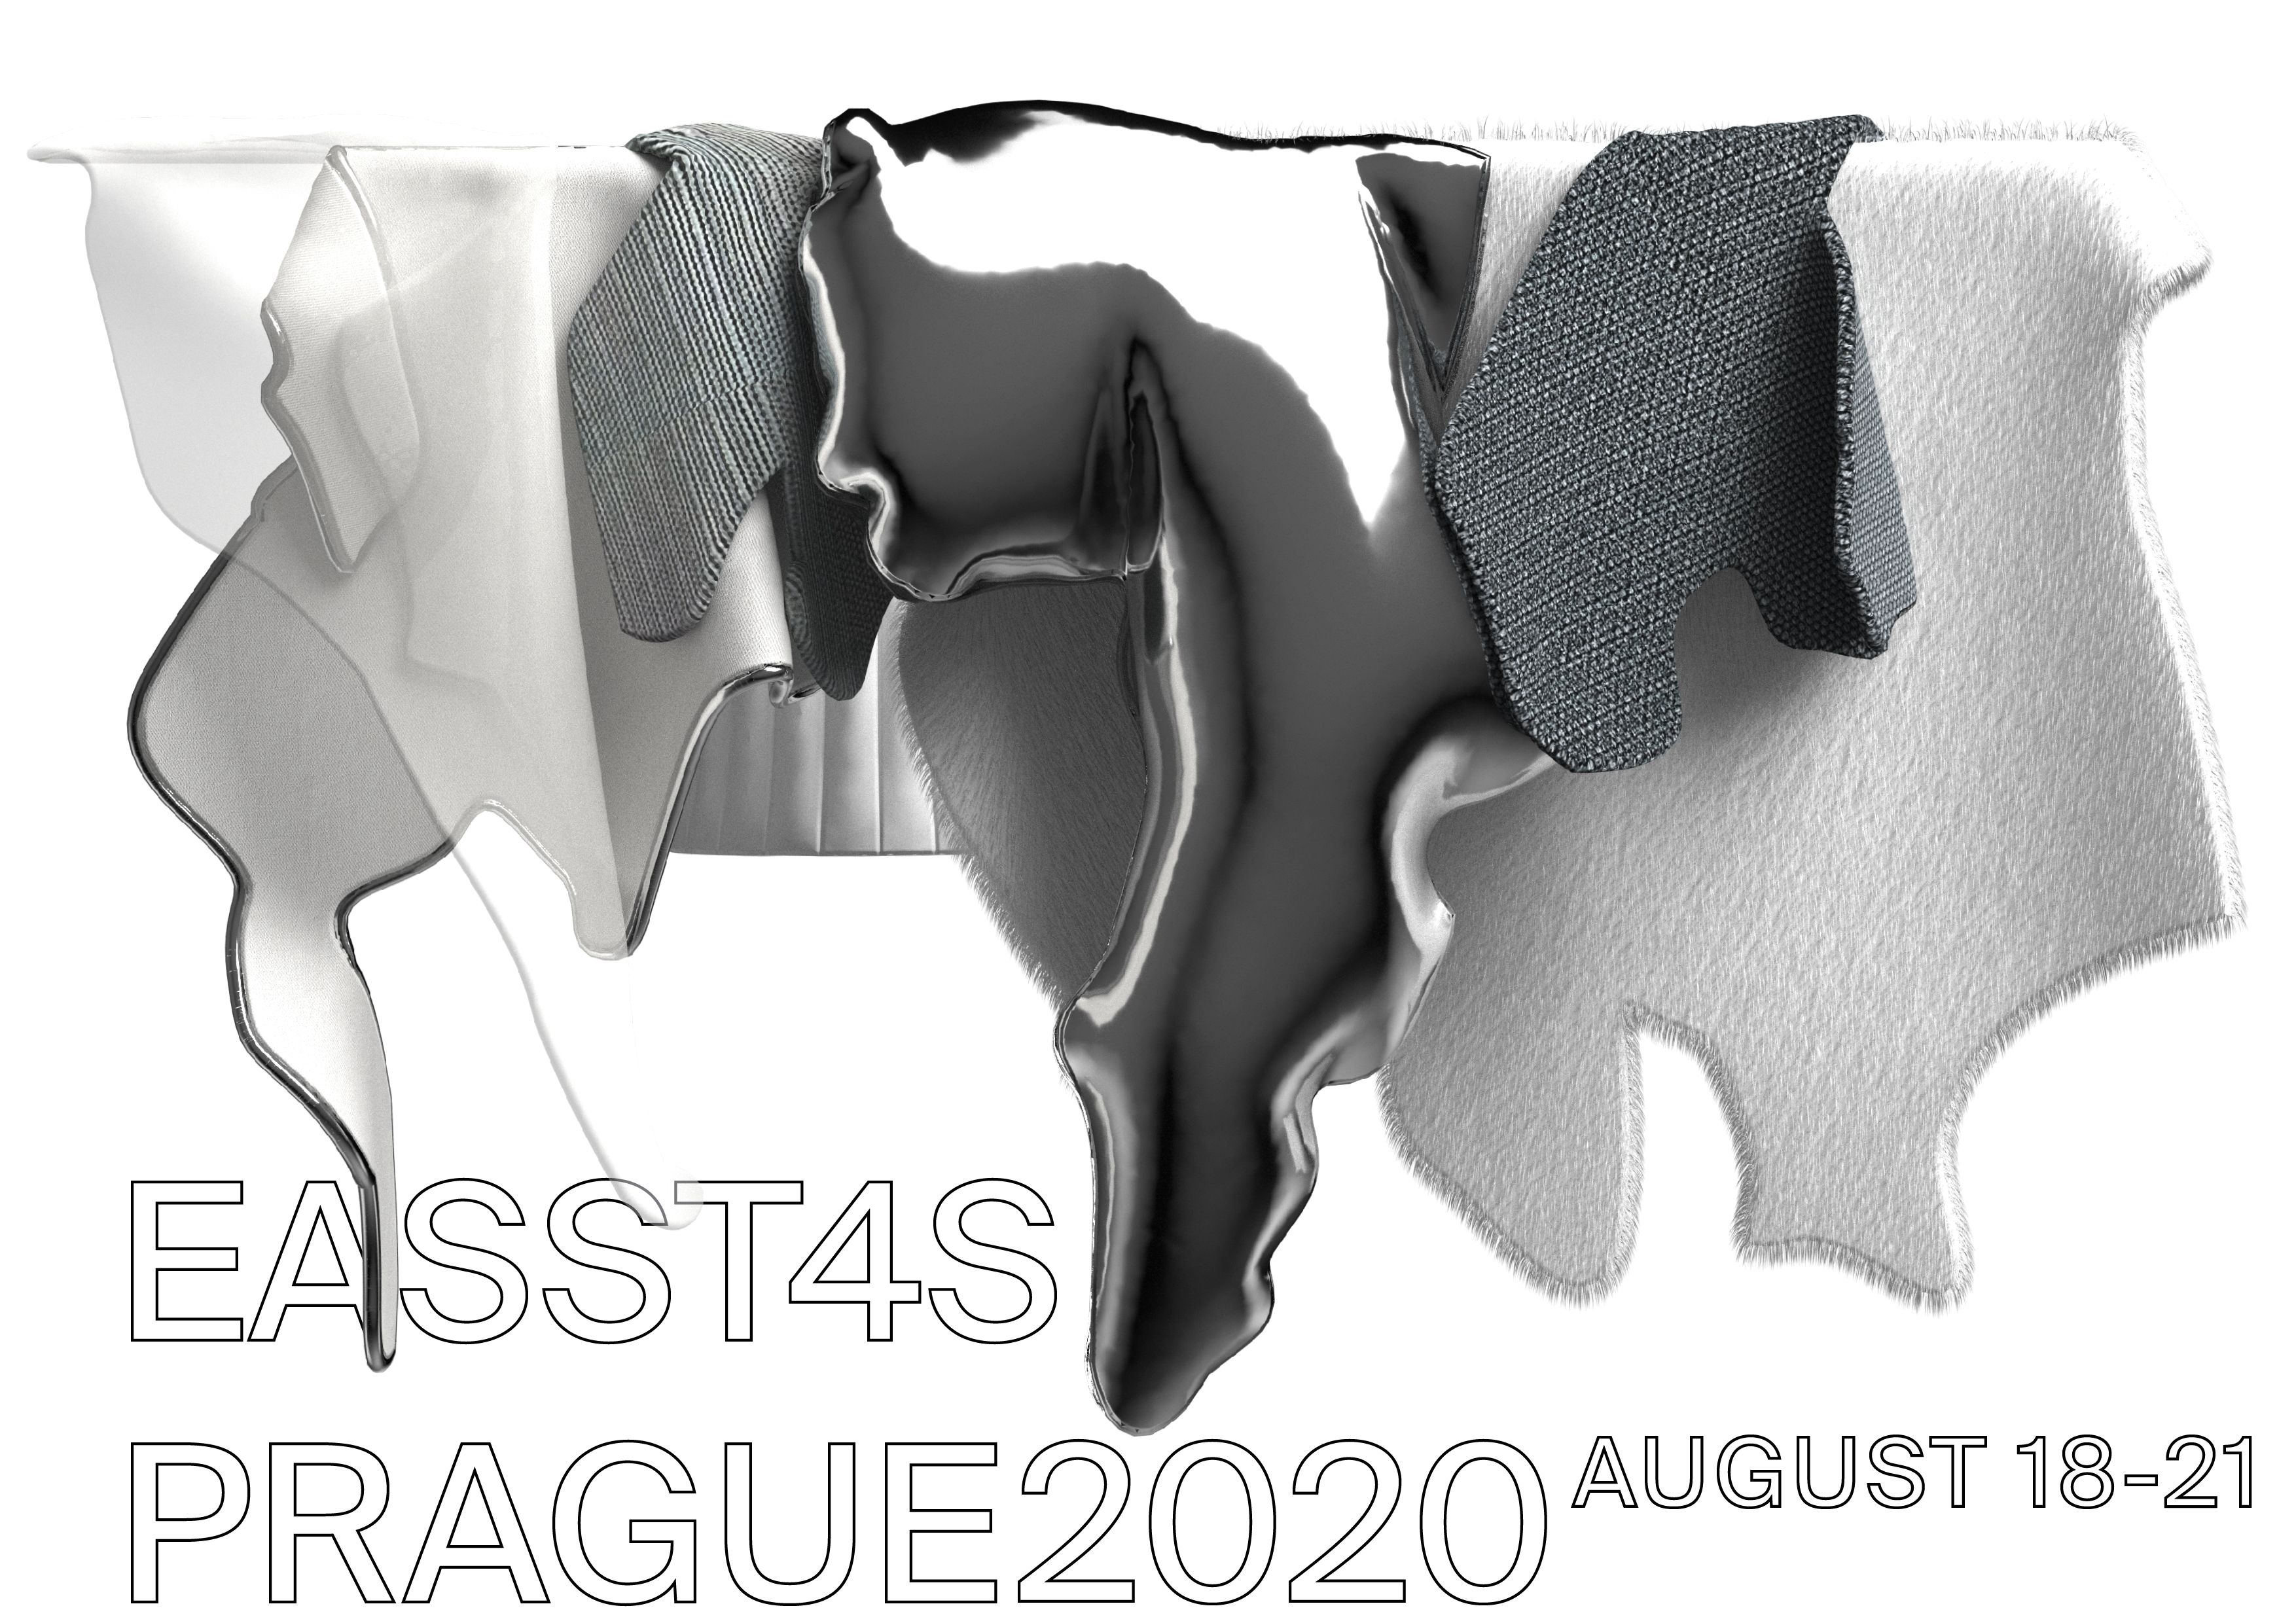 EASST-4S virPrague 2020